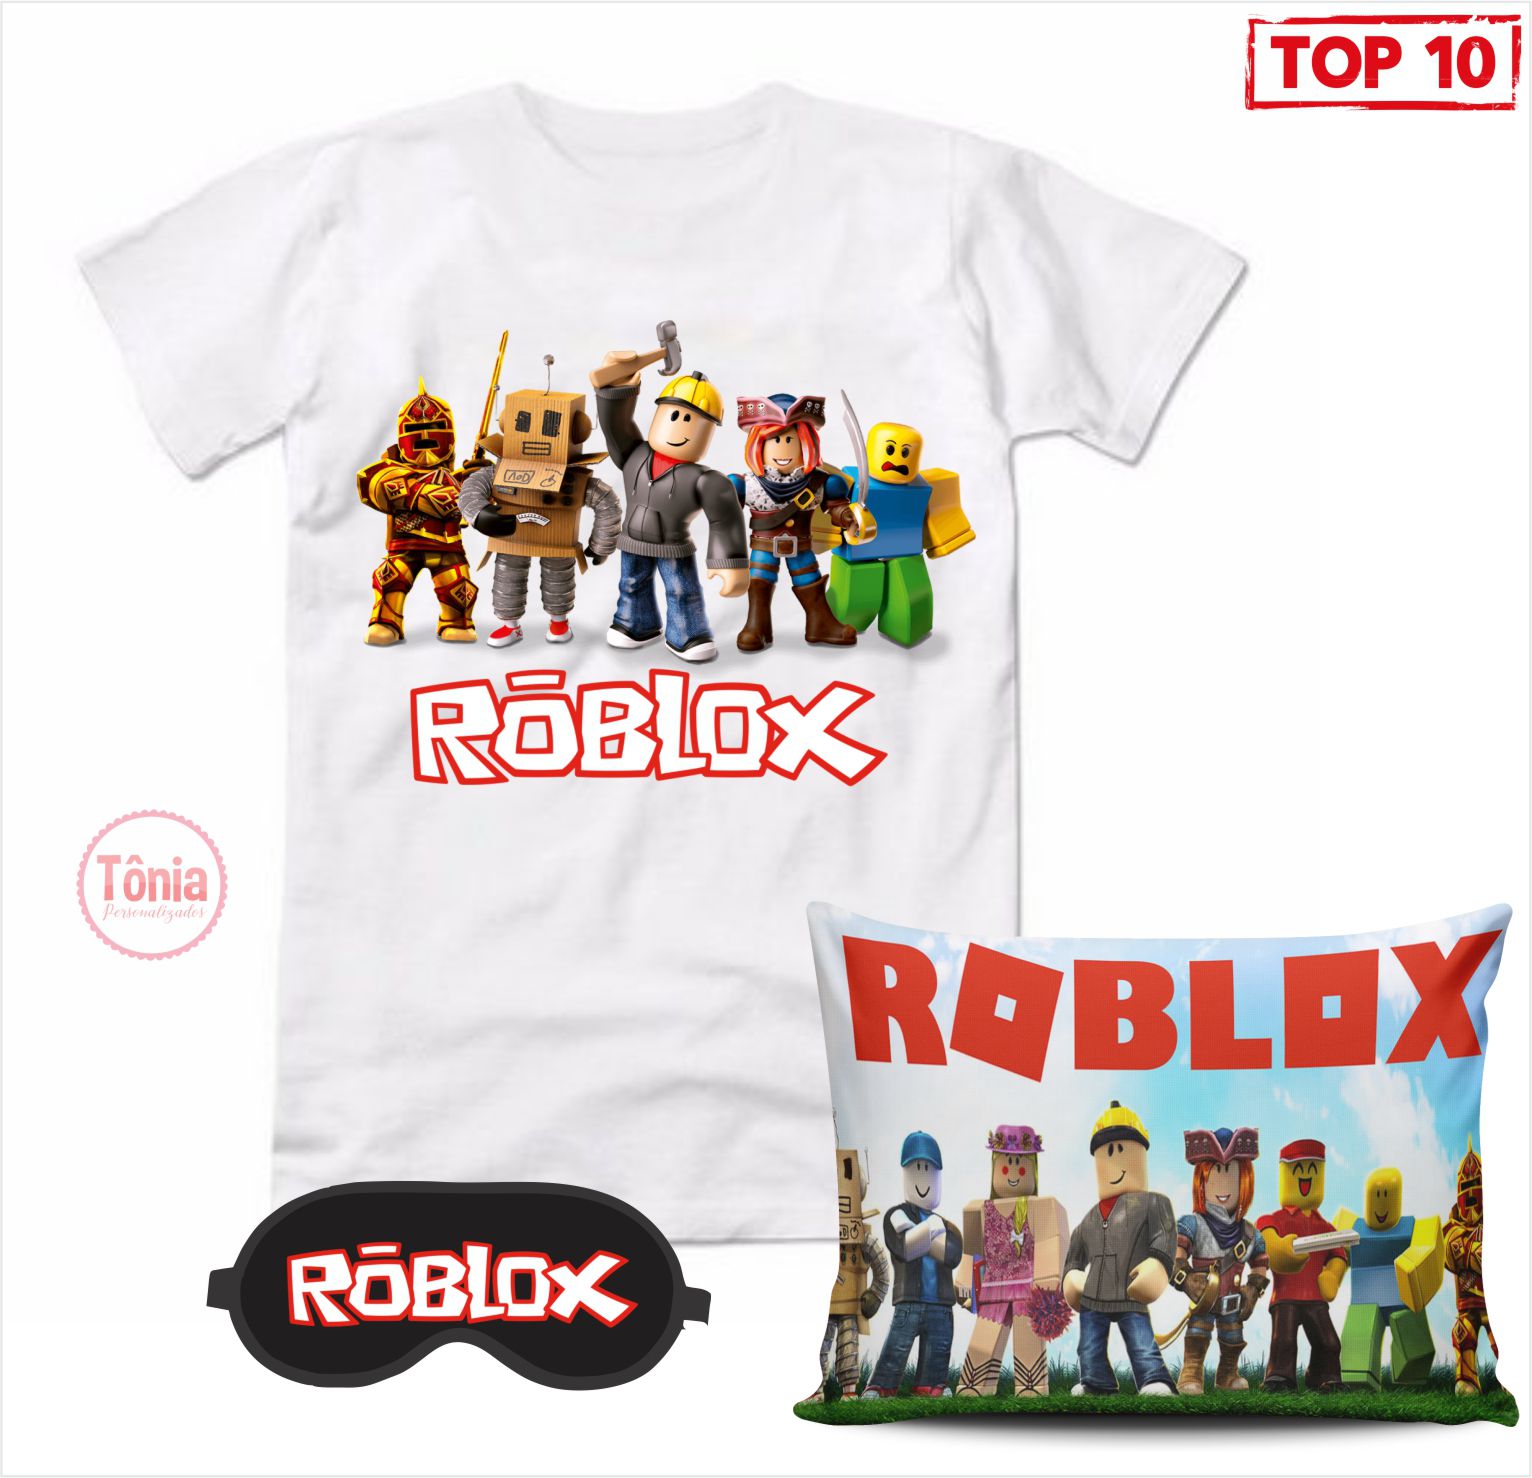 Roblox kit camiseta, almofada e máscara de dormir - Tônia